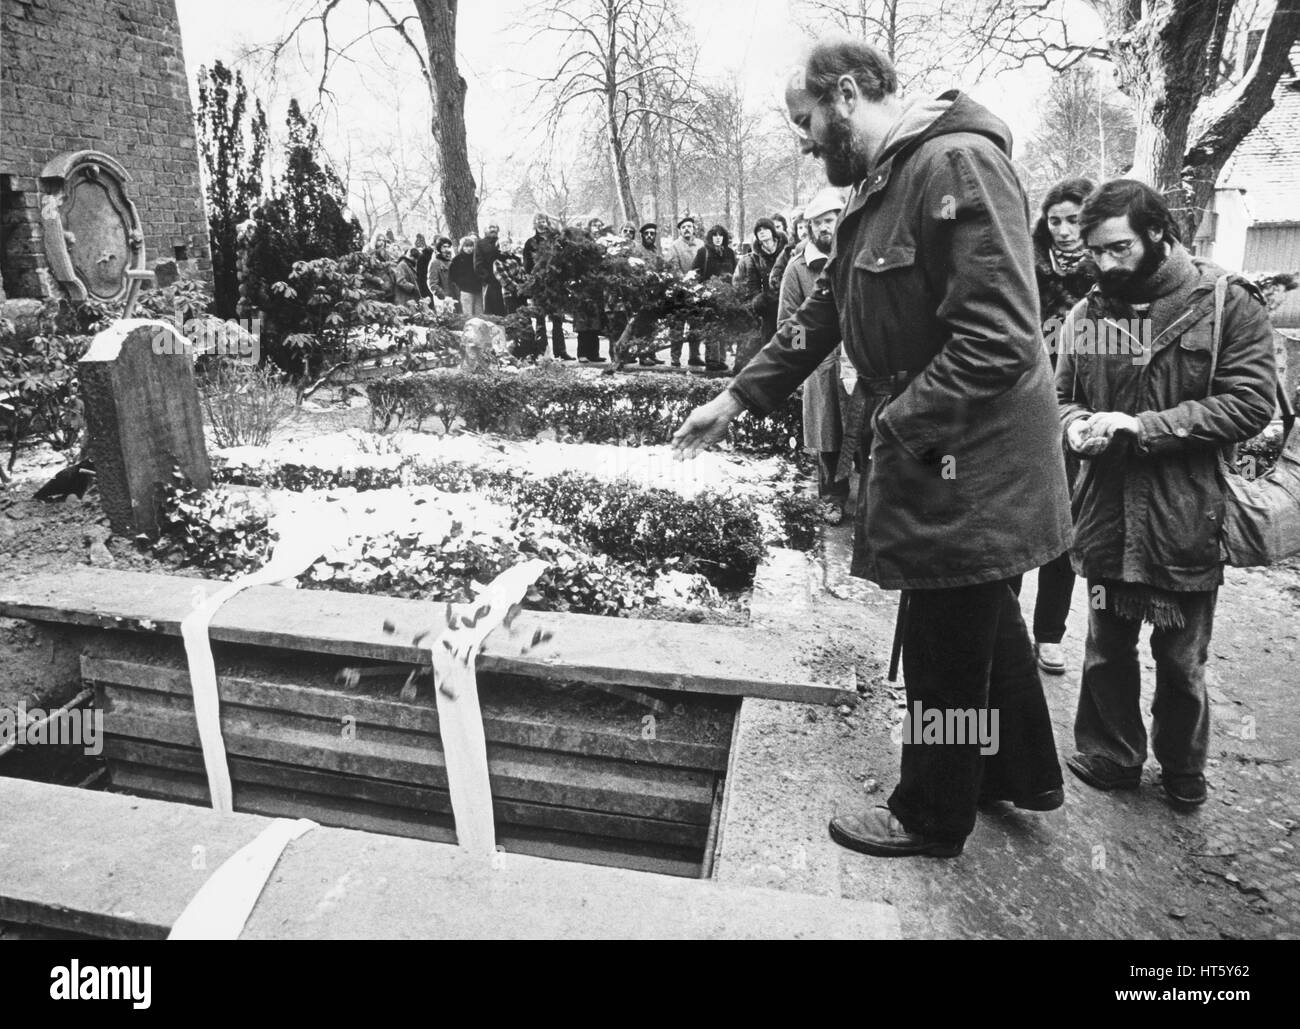 Berlin, 3. Januar 1980 - Begräbnis von RUDI DUTSCHKE (* 7. März 1940; † 24. Dezember 1979) auf dem St.-Annen-Friedhof in Berlin-Dahlem. Rudi Dutschke war der prominenteste Sprecher der deutschen Studentenbewegung der 1960er Jahre. Horst Mahler (vorne) am offenen Grab Stockfoto